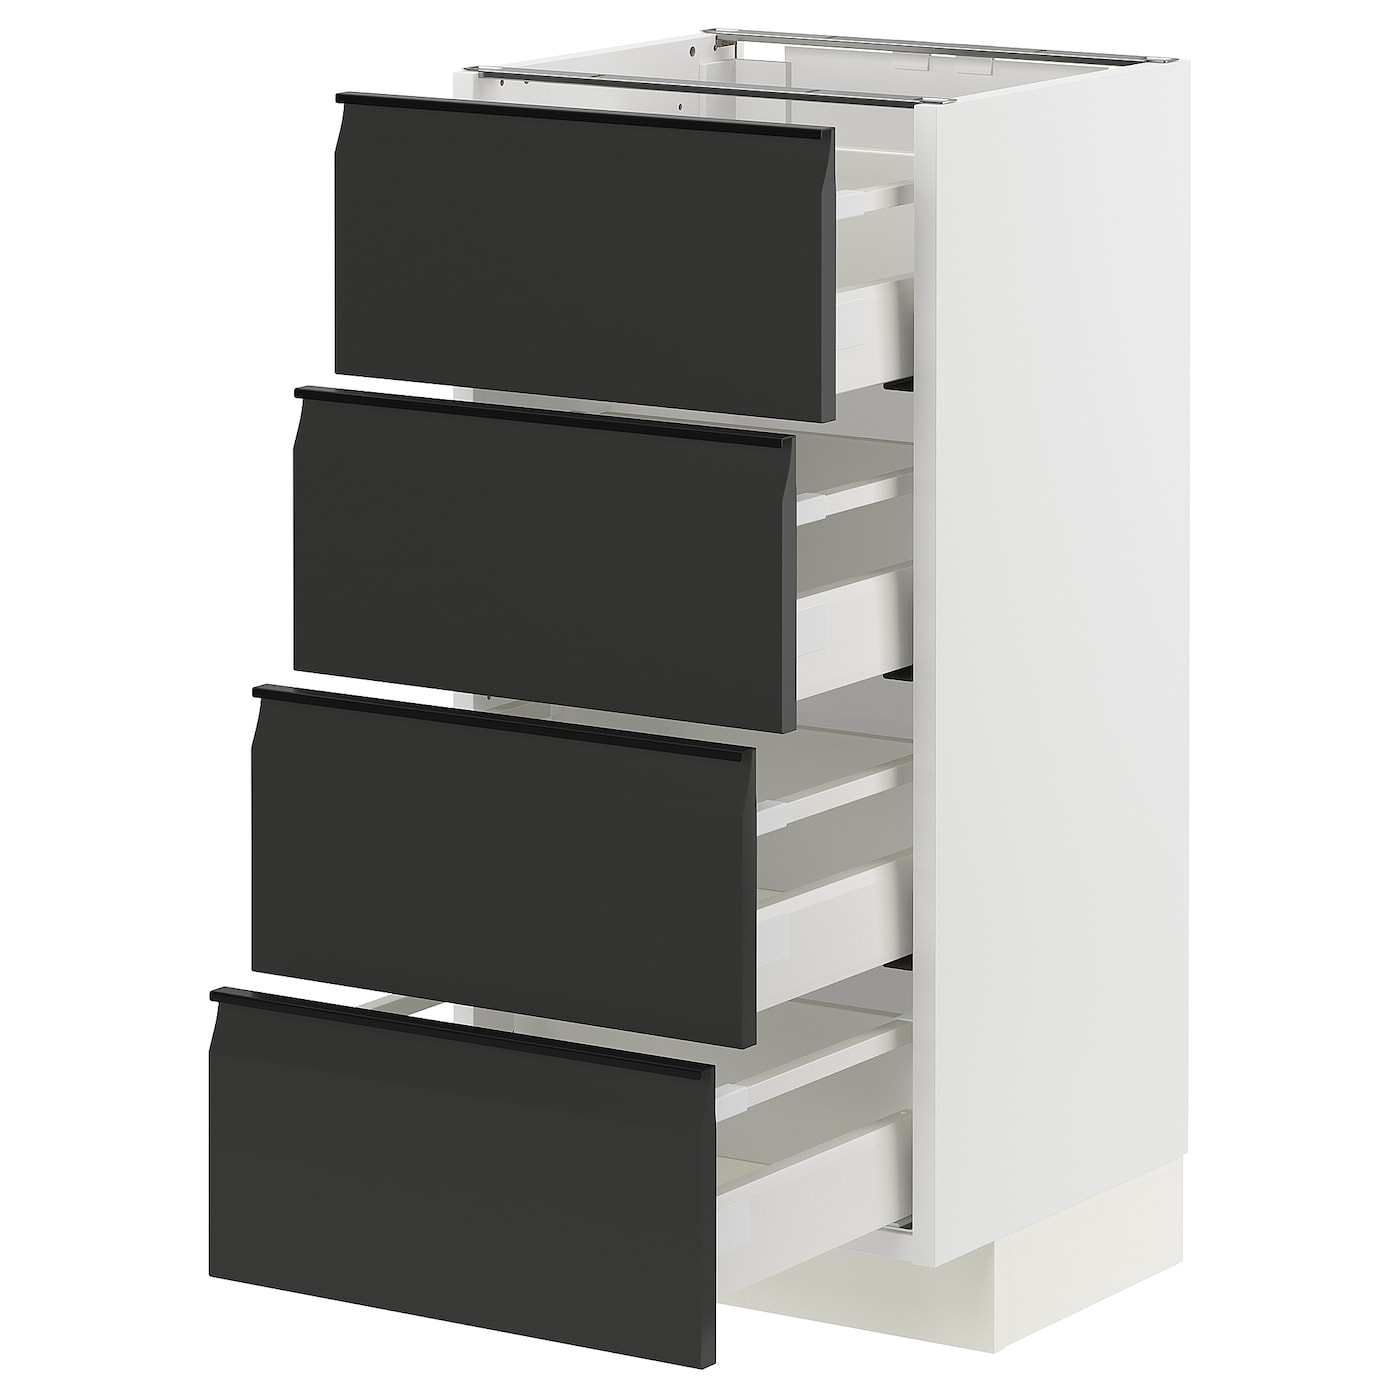 Напольный кухонный шкаф  - IKEA METOD MAXIMERA, 88x39,2x40см, белый/черный, МЕТОД МАКСИМЕРА ИКЕА